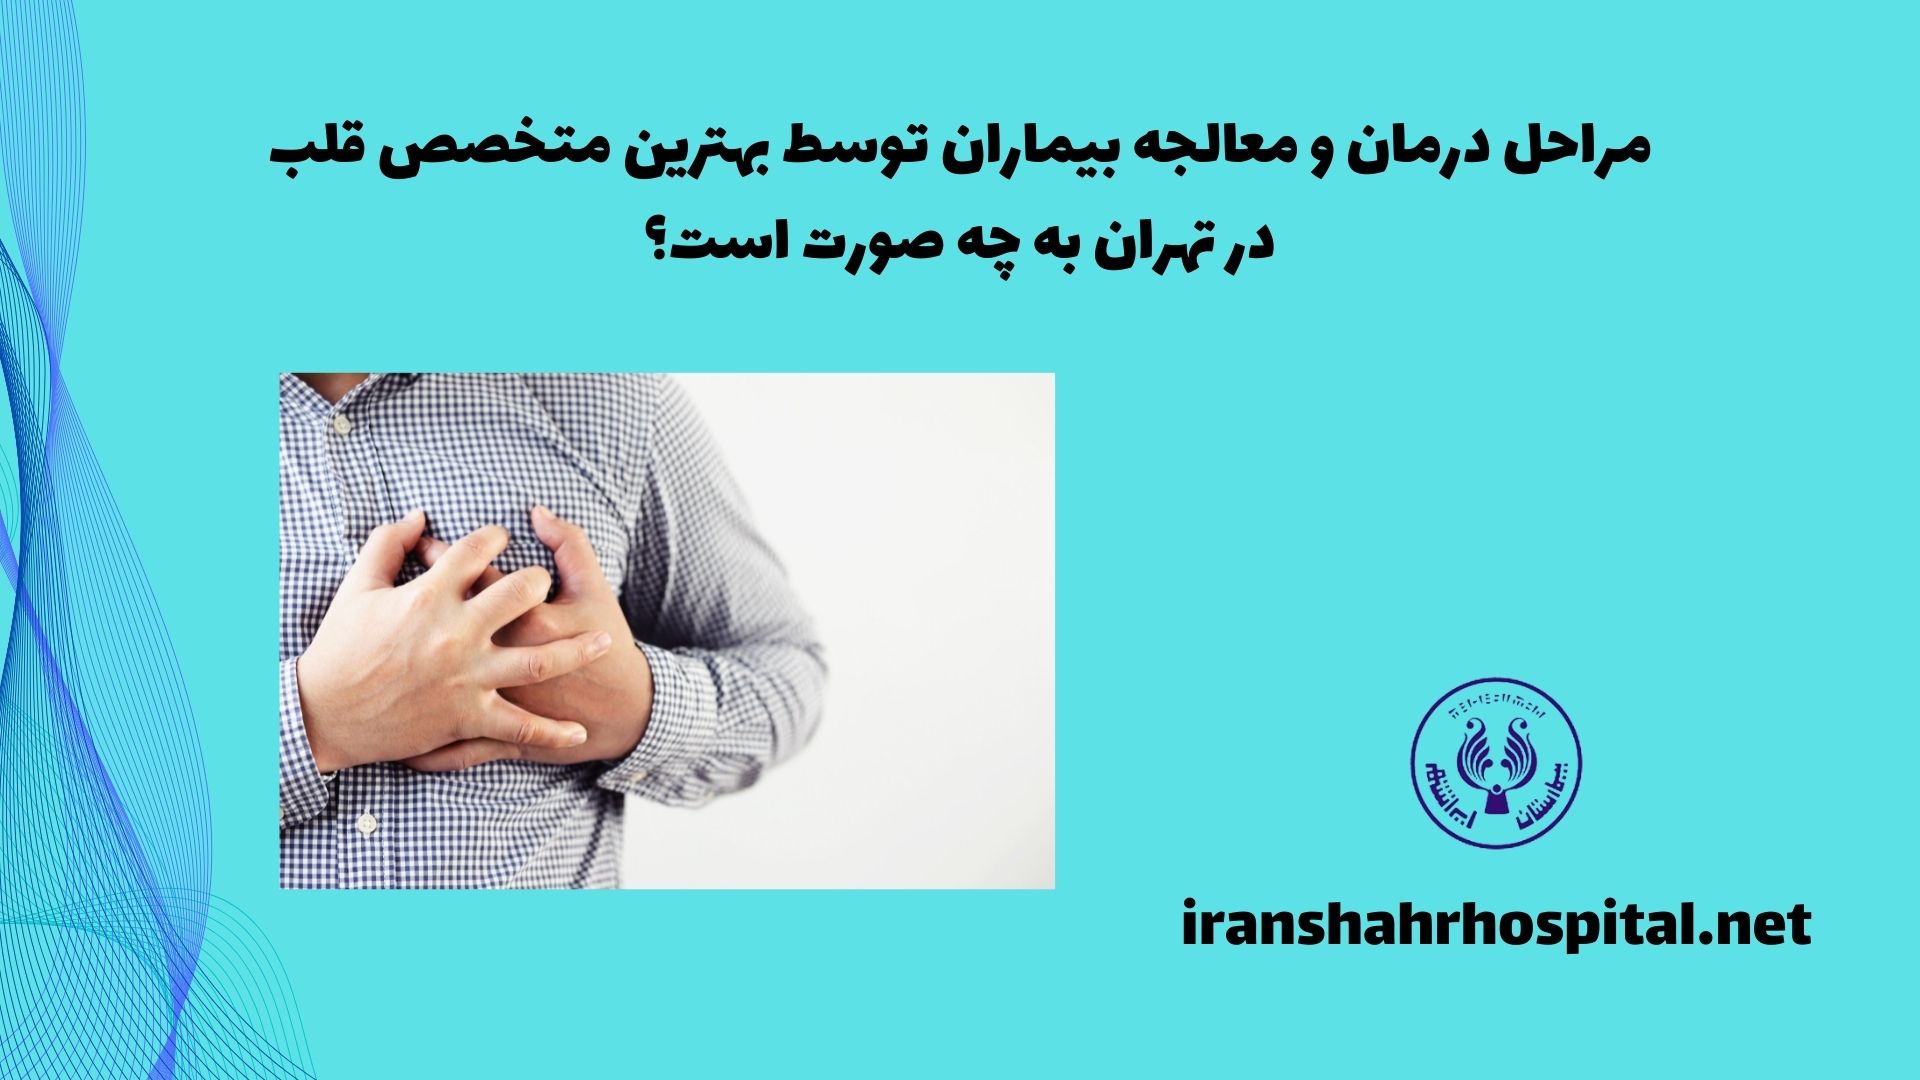 مراحل درمان و معالجه بیماران توسط بهترین متخصص قلب در تهران به چه صورت است؟